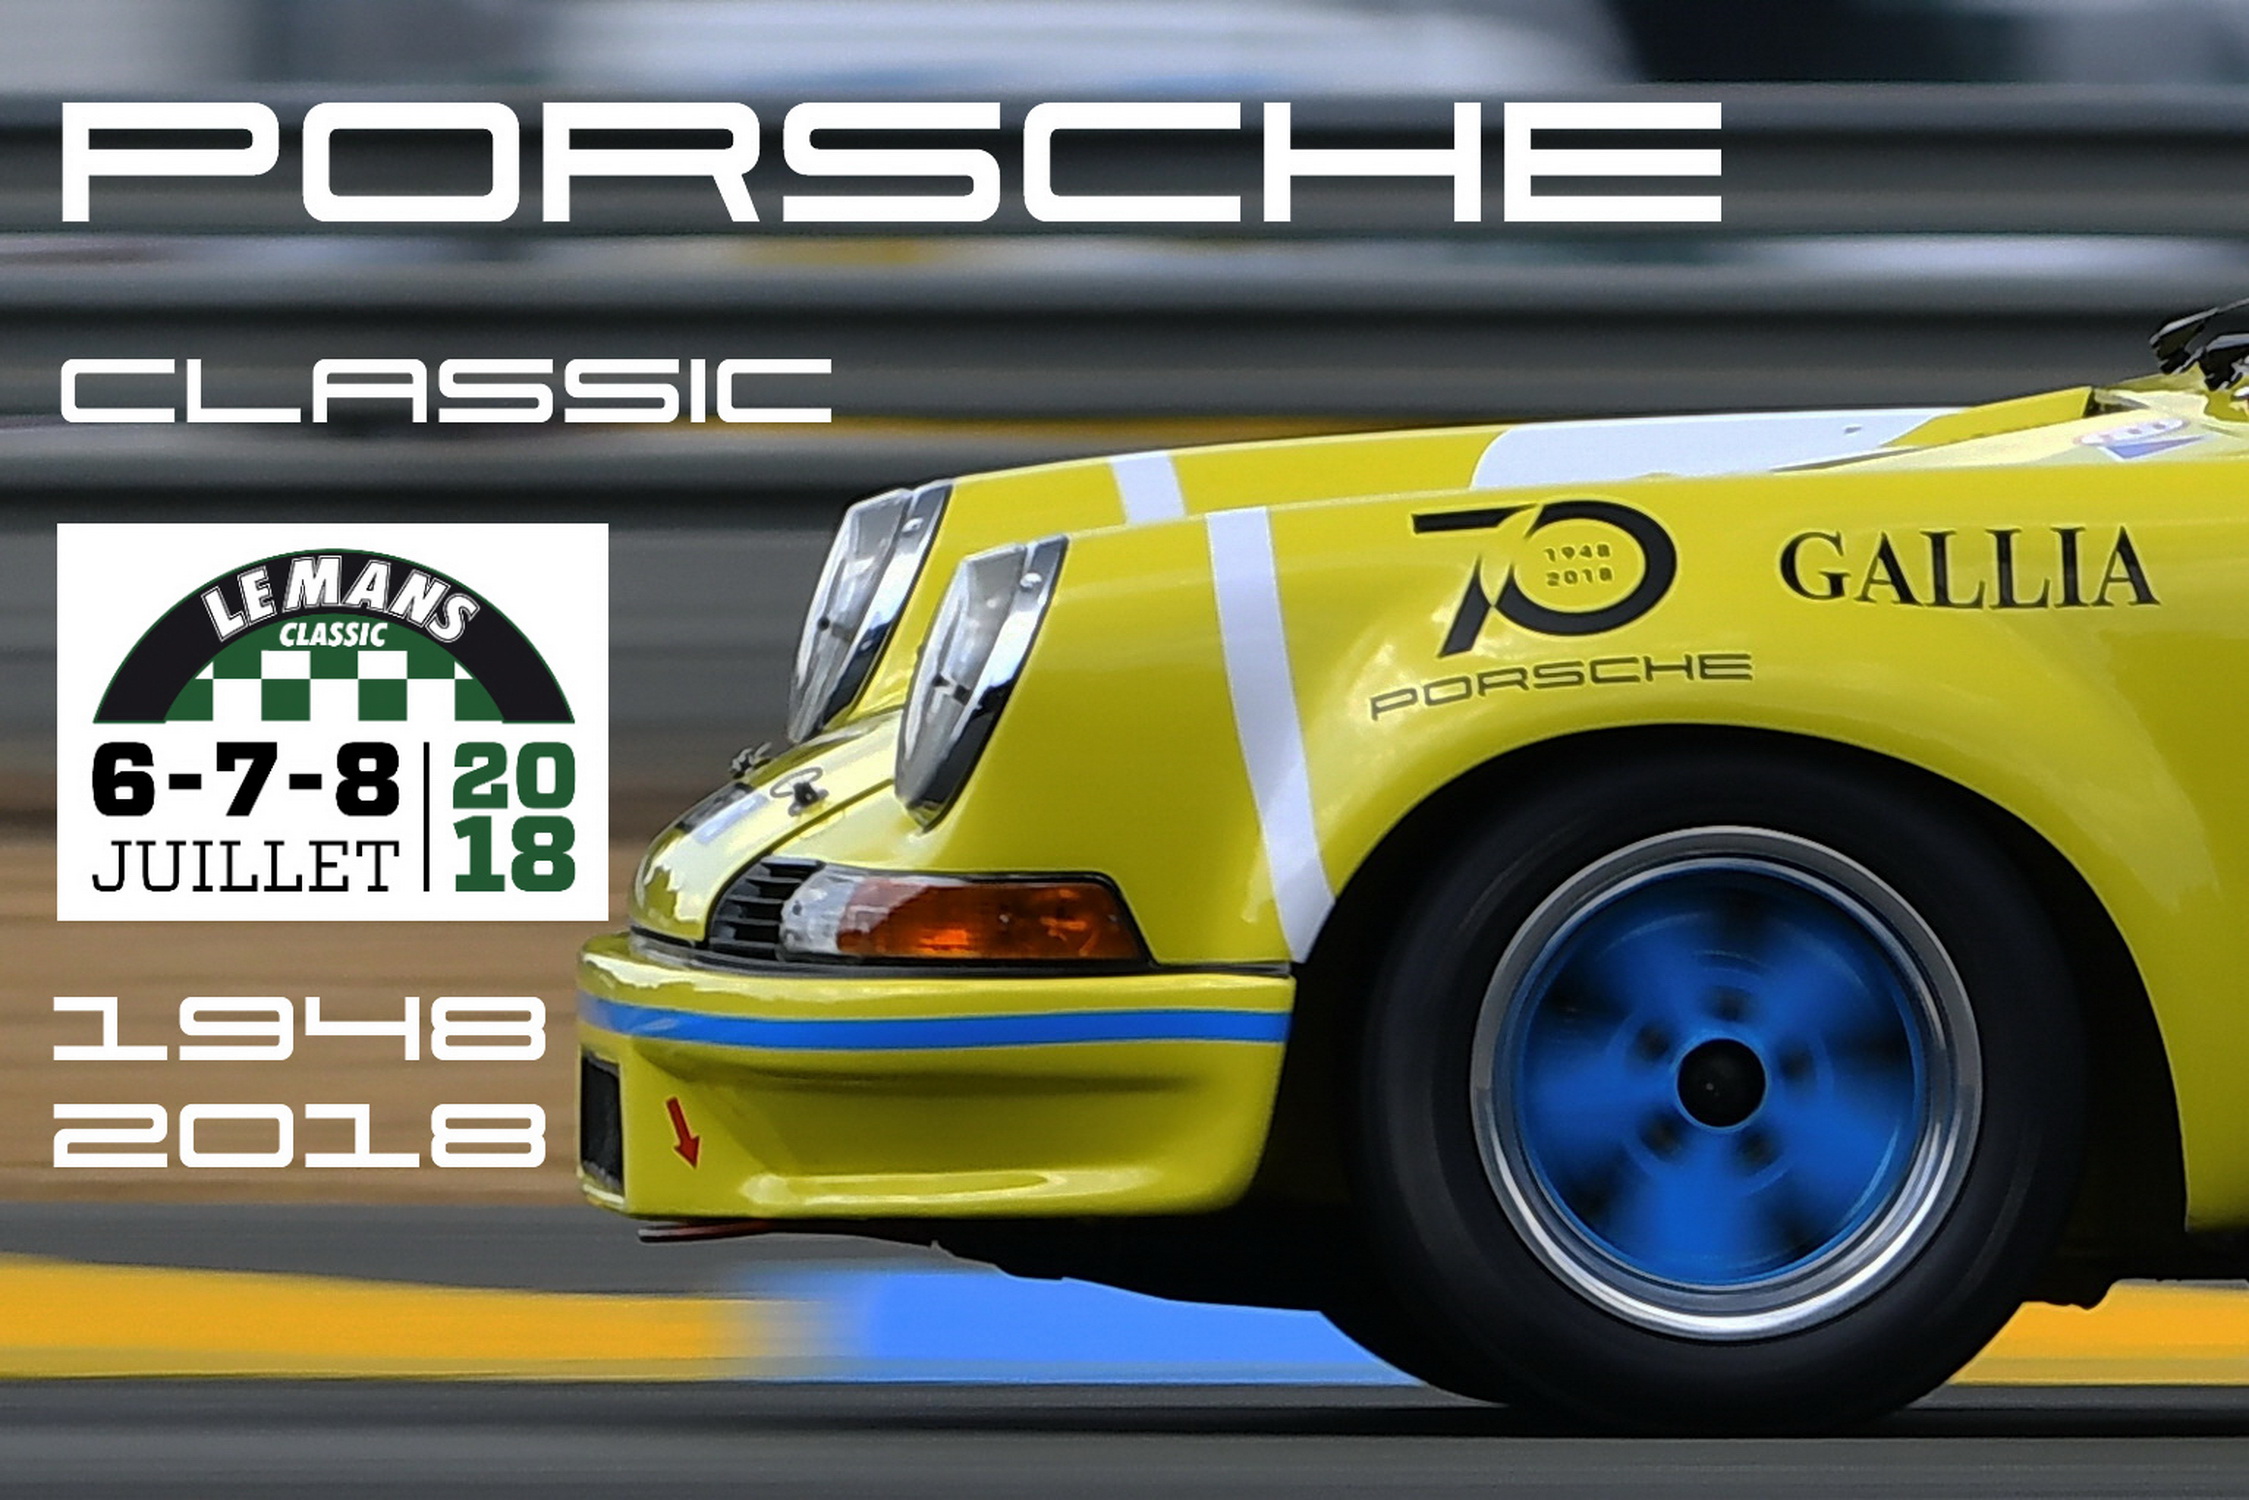 Le Mans Classic 2018 Porsche 01-